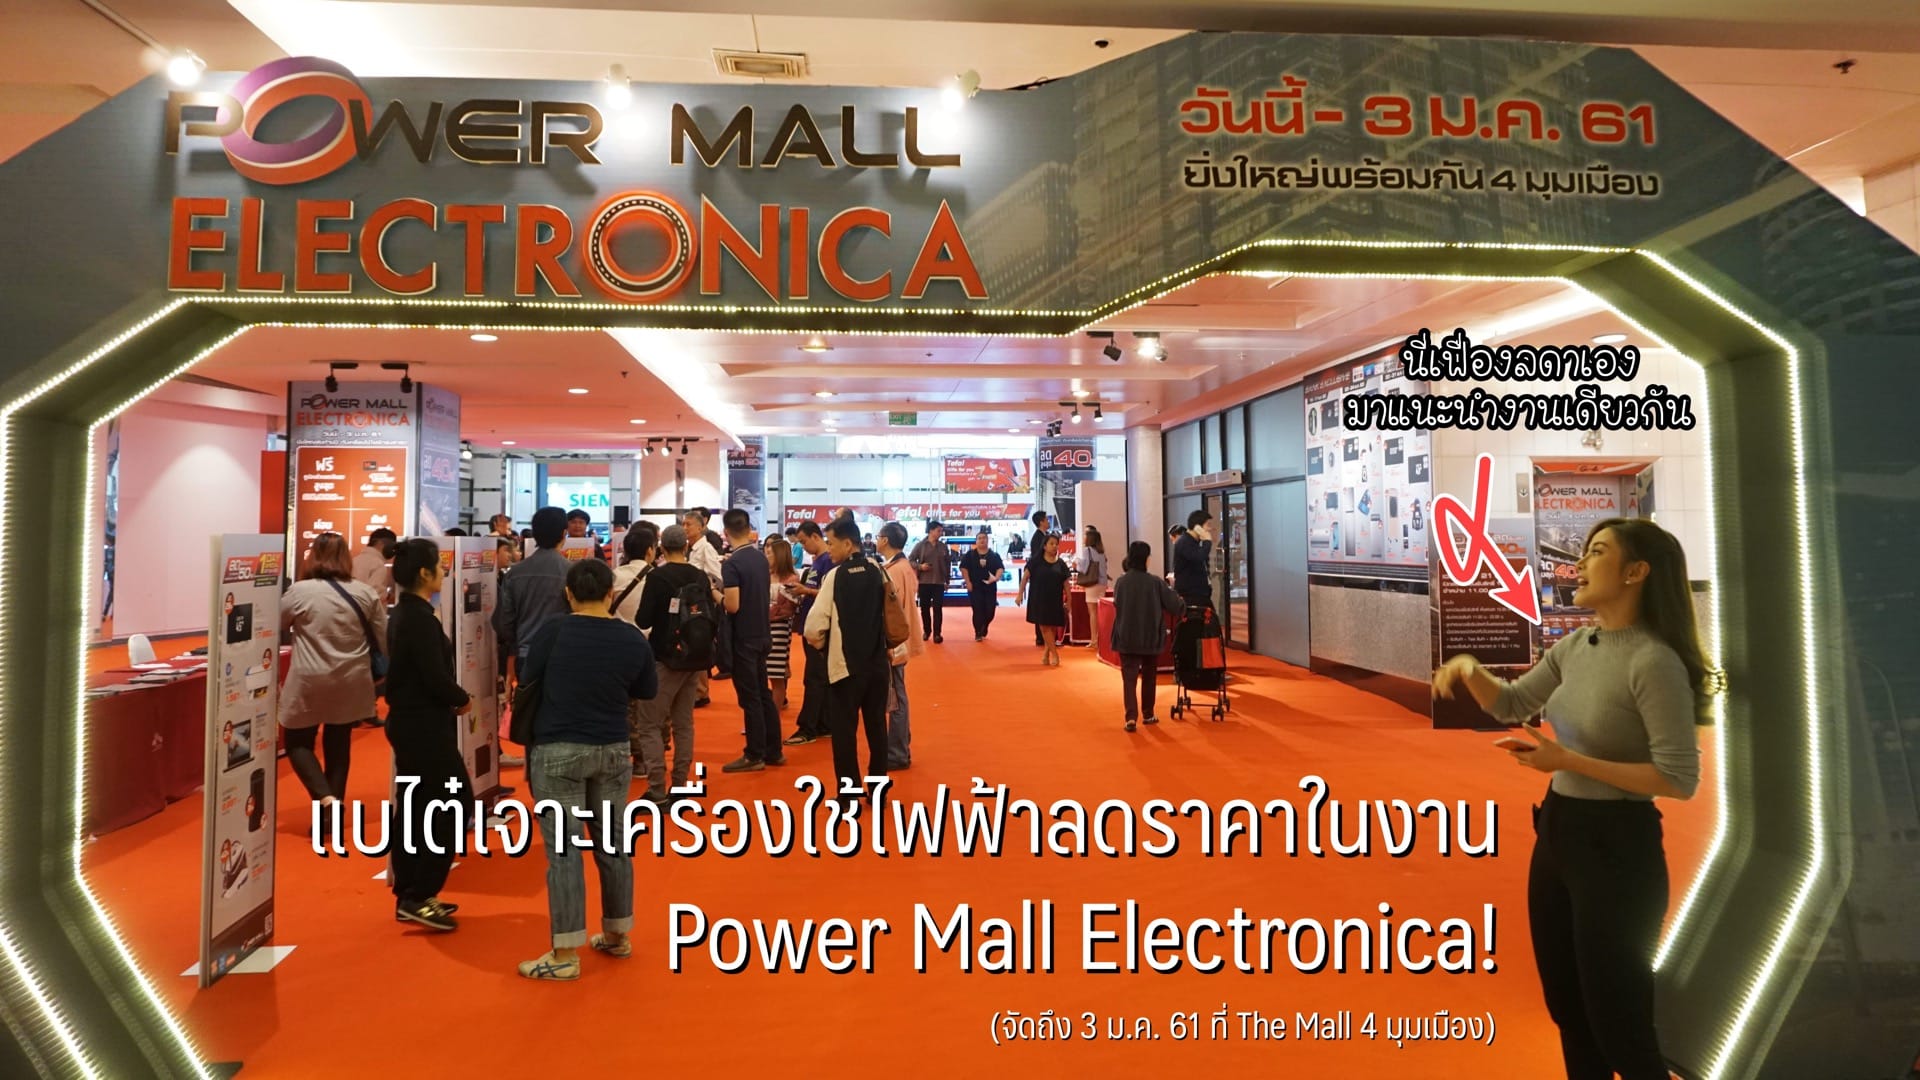 แบไต๋เจาะเครื่องใช้ไฟฟ้าลดราคาในงาน Power Mall Electronica ที่ The Mall 4 มุมเมือง